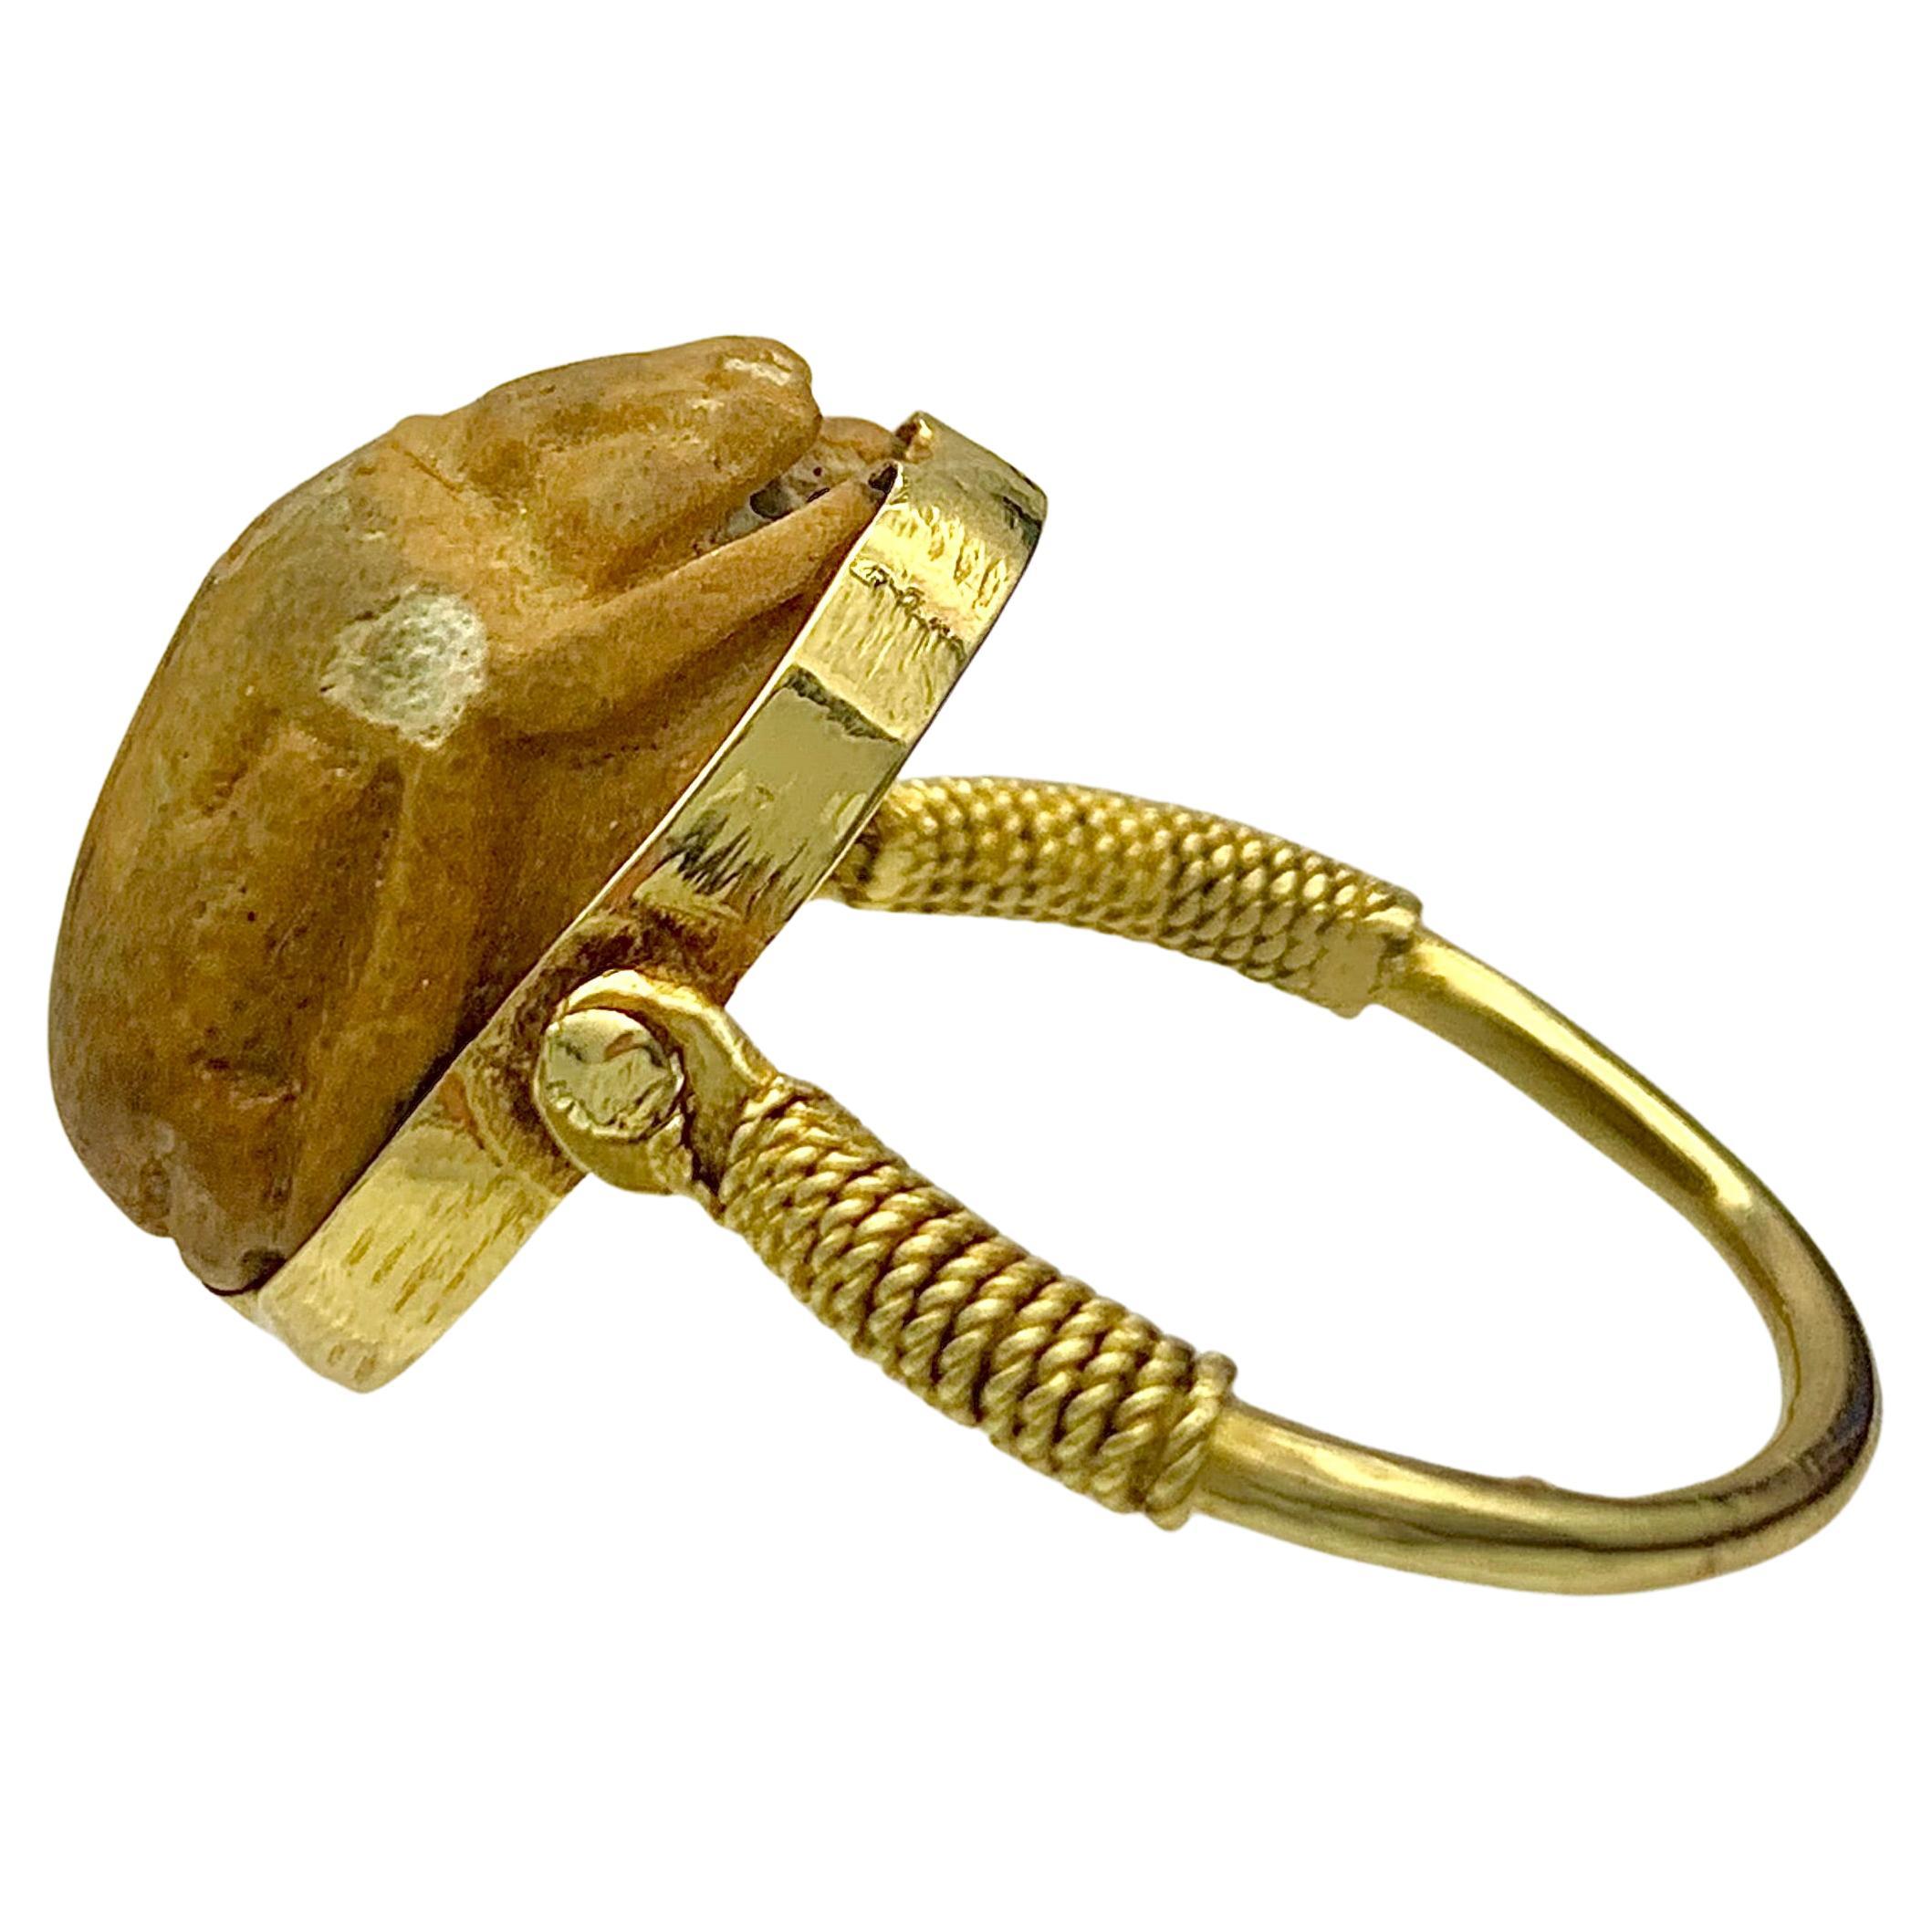 Dieser antike Fayence-Skarabäus ist in einen drehbaren Ring aus 18 Karat Gold gefasst.  Die Ringschultern sind mit gedrehtem Golddraht verziert. Im alten Ägypten sollte der Skarabäus den reibungslosen Übergang von einem Leben zum anderen